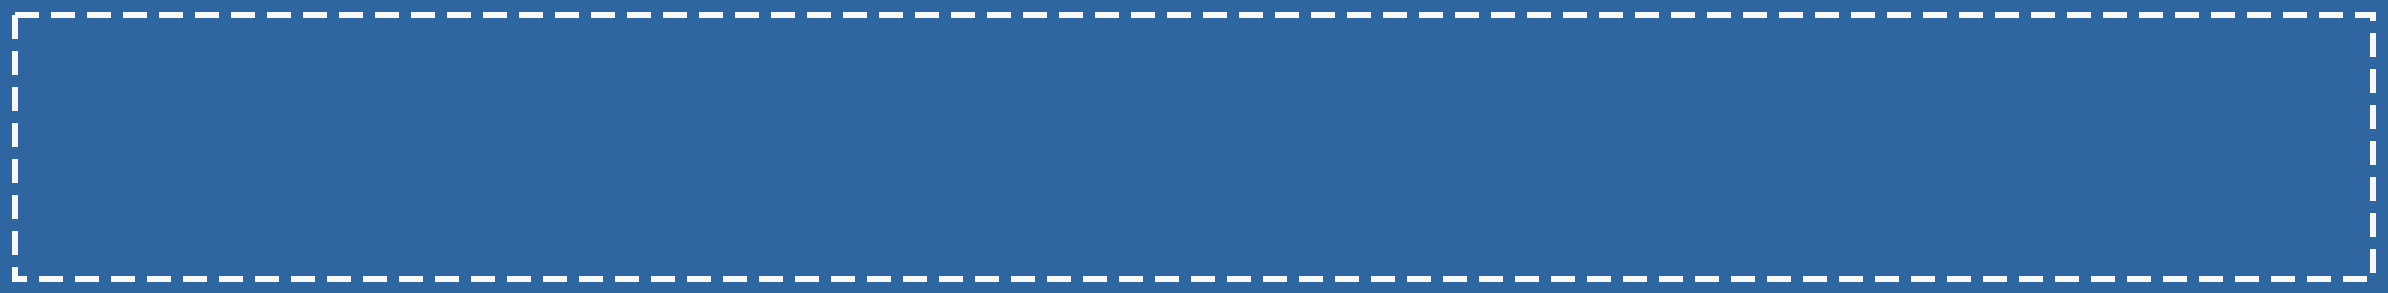 青い背景に白い波線のふちがあるボトムテロップのイラスト